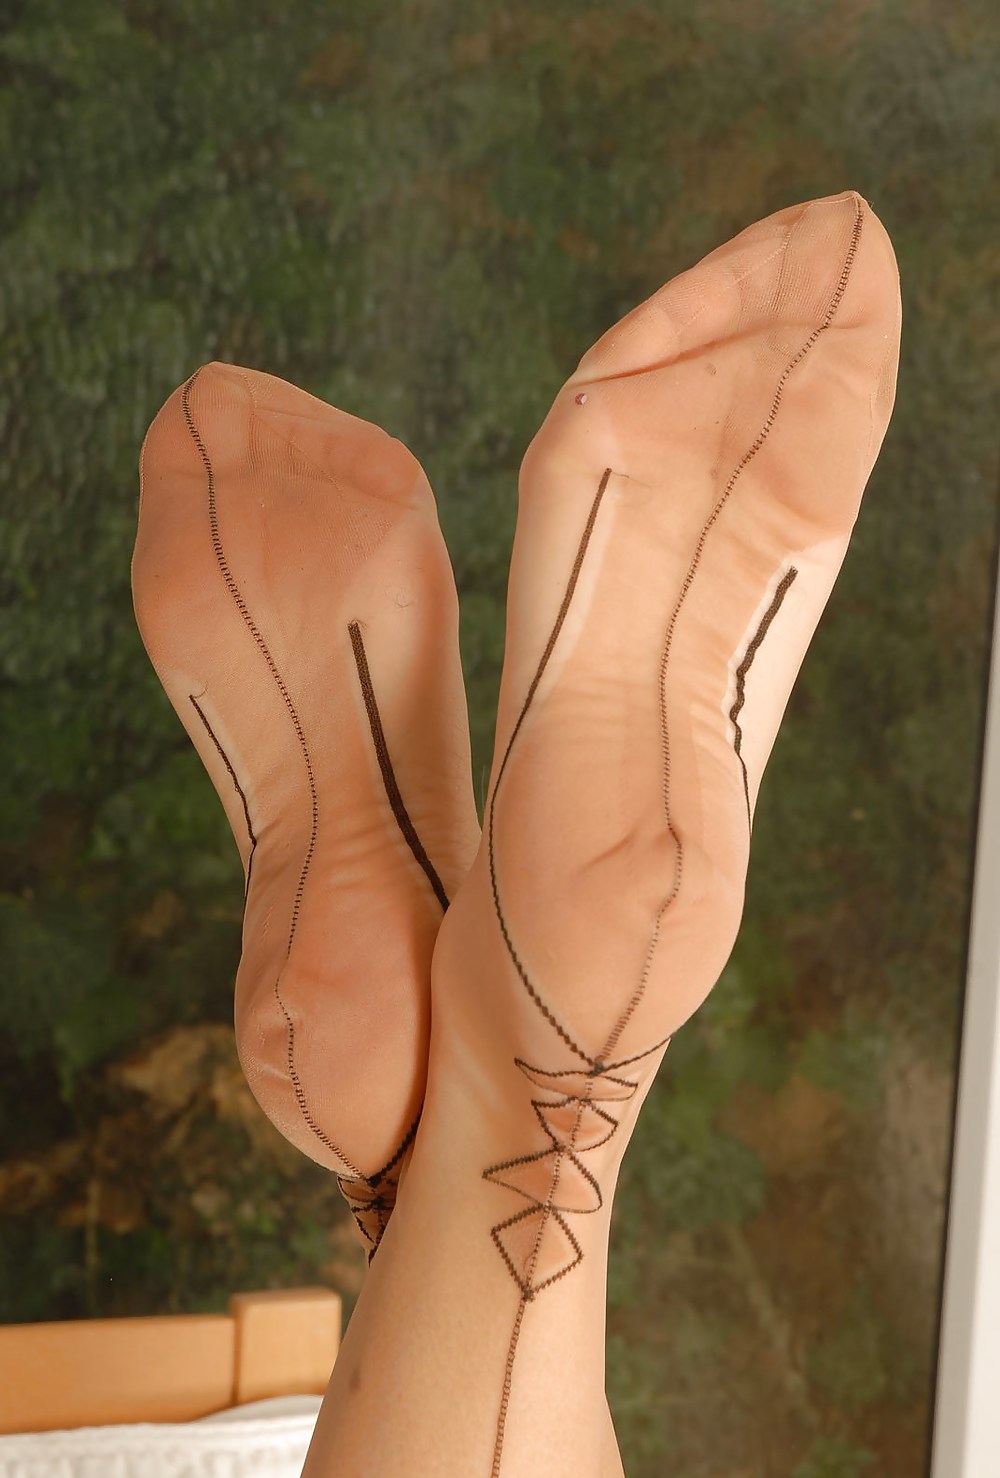 Nylon feet part 1 #8781590